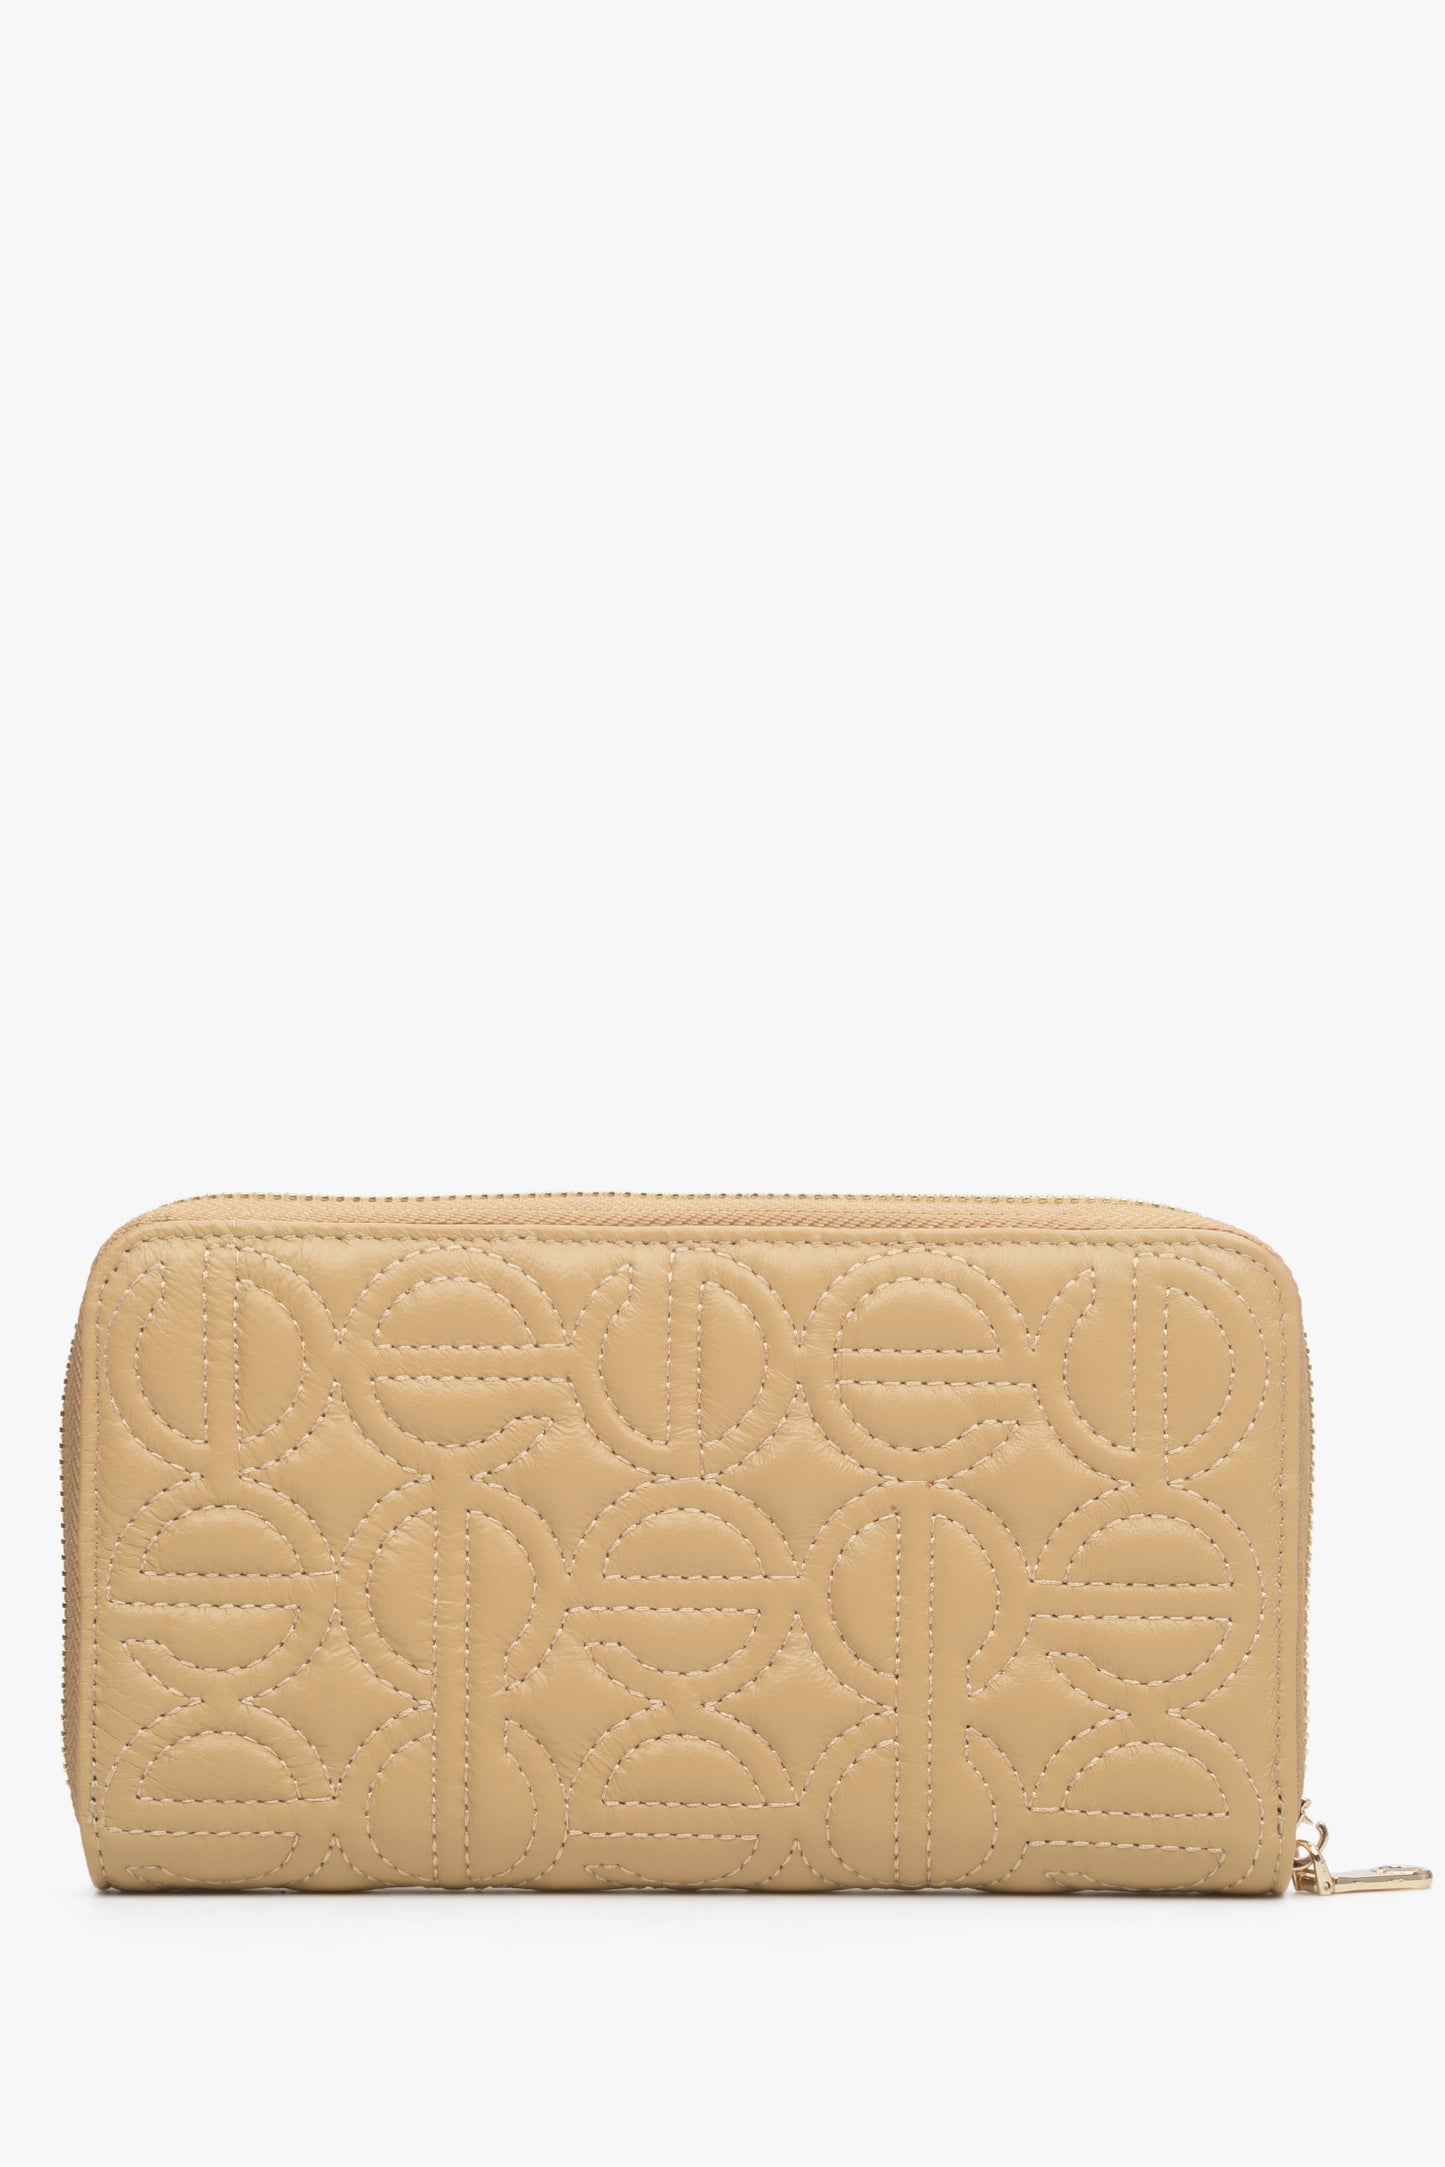 Beżowy, skórzany portfel damski z tłoczonym logo marki Estro.